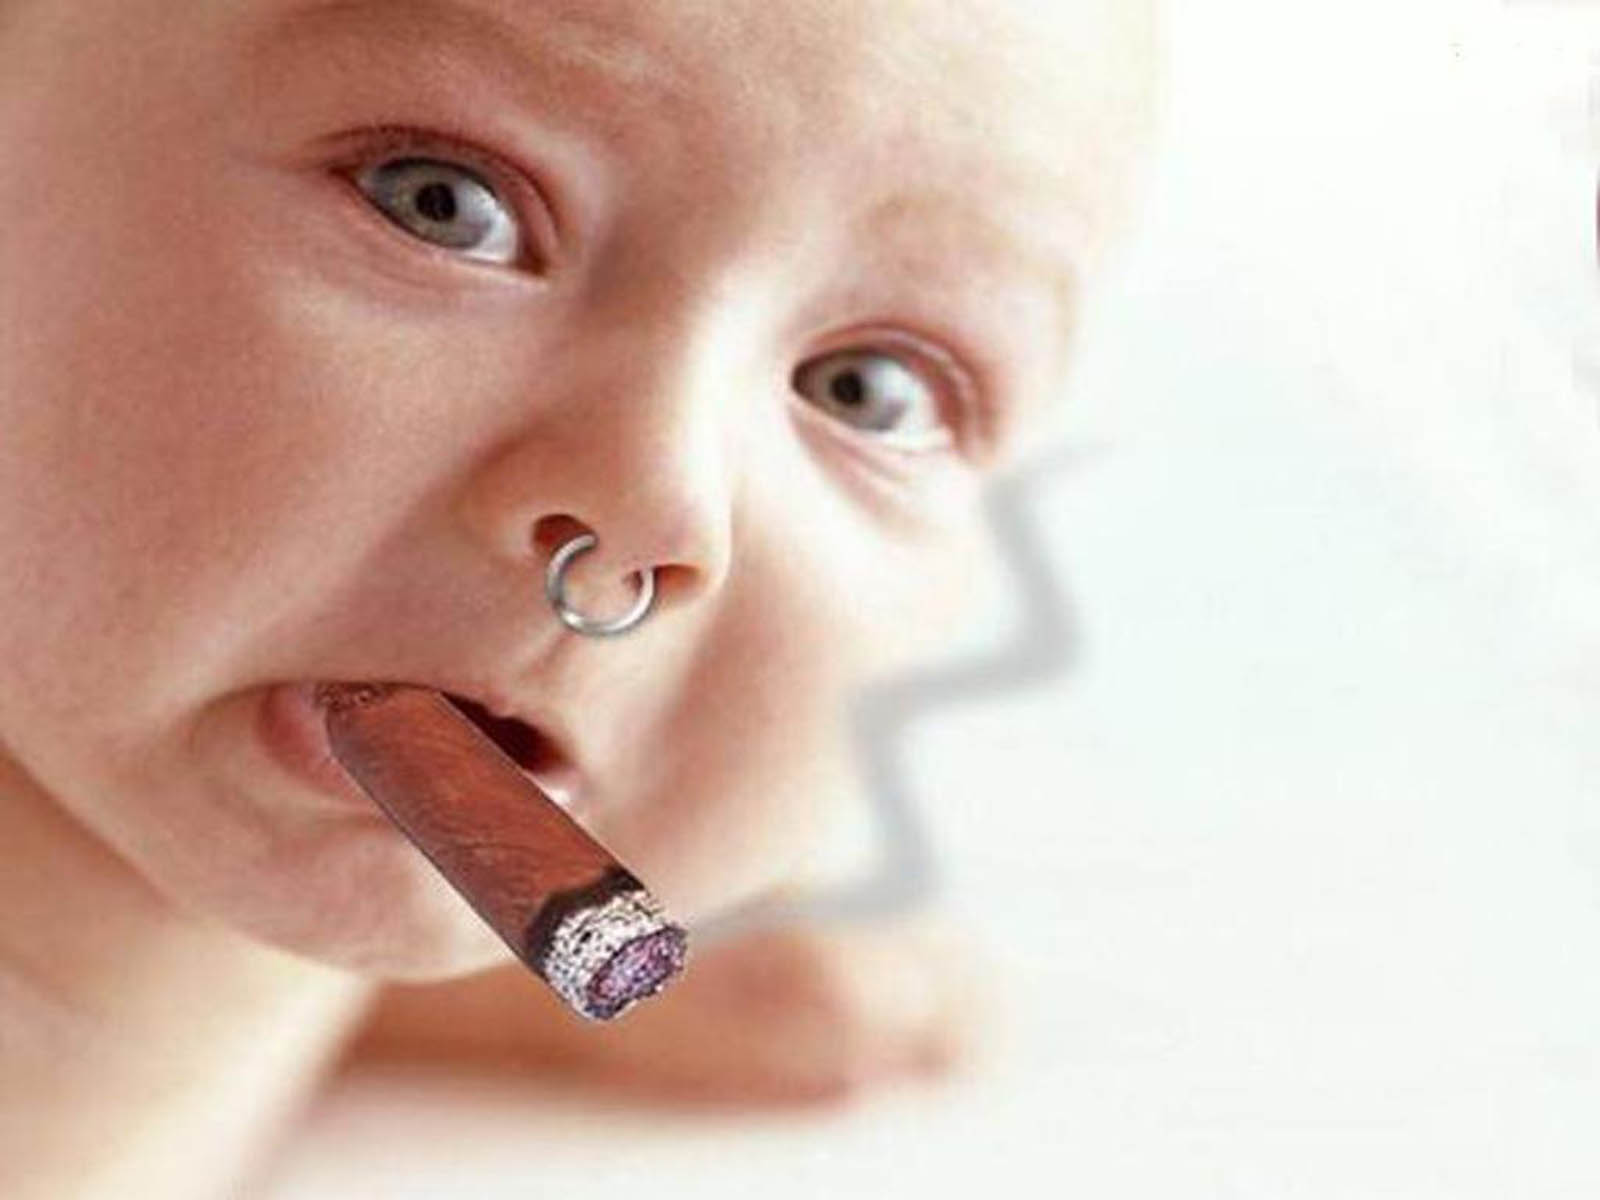 funny pics of babies smoking